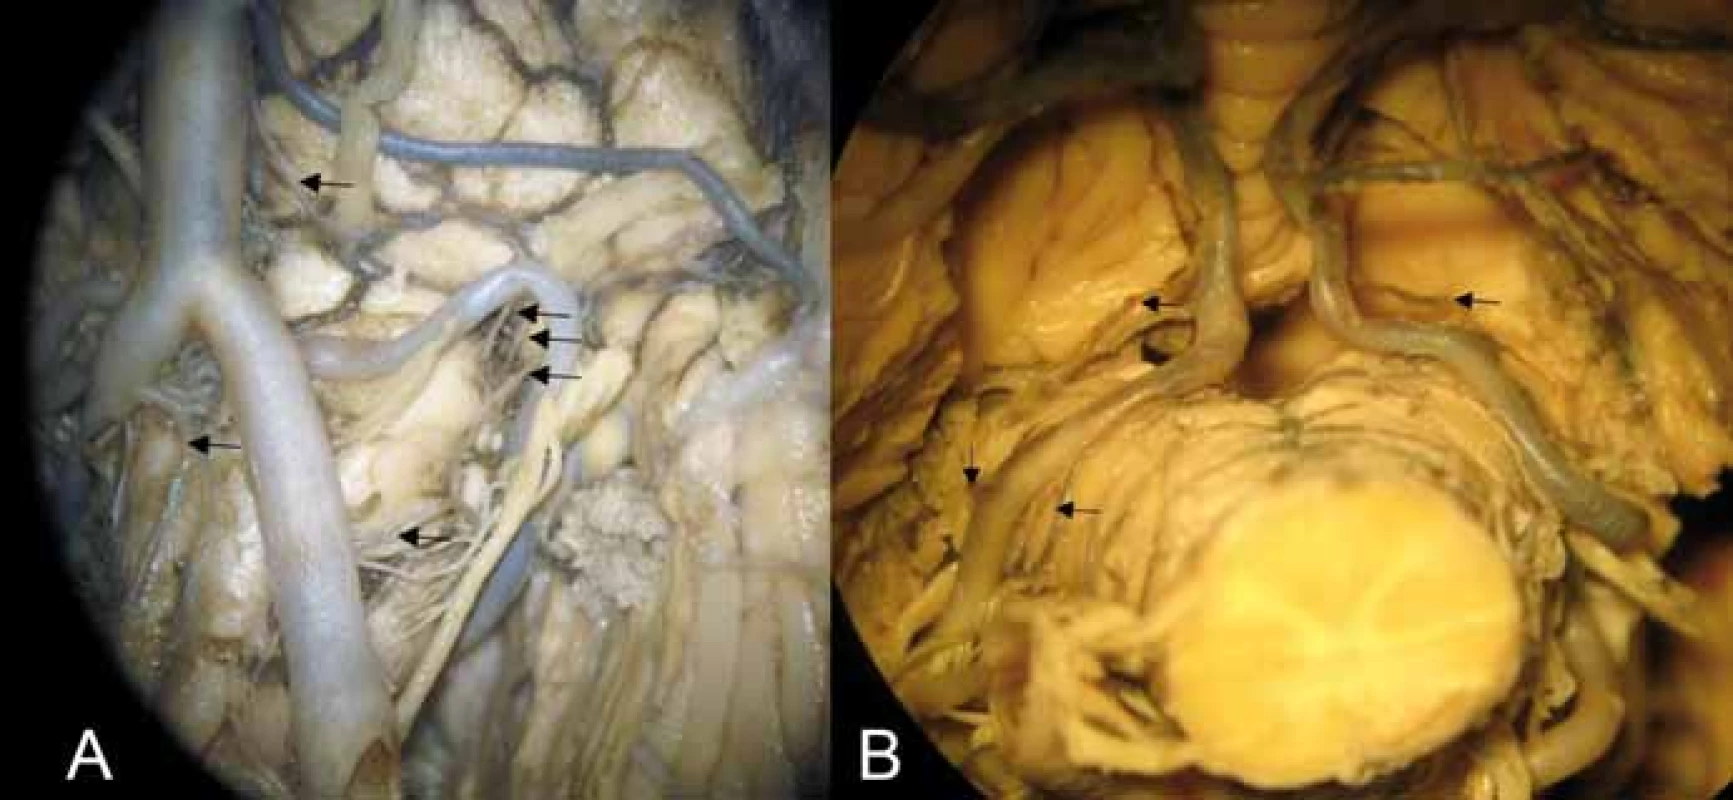 (A) Anteriorní a laterální perforátory pro medulla oblongata. Šipky označují
kaudokraniálně – laterální medullární perforátory z arteria vertebralis, arteria spinalis
anterior, laterální medullární perforátory z arteria cerebelli inferior posterior v oblasti
retroolivární fossy, pontomedullární arterie vstupující do sulcus bulbopontinus. (B)
Tonsillomedullární a telovelotonsillární segment arteria cerebelli inferior posterior;
kraniální šipky – rostrální zadní medullární arterie vč. choroidální větve (vlevo) a větévky
ke corpus restiforme; kaudální šipky vlevo – dorzální perforátory z arteria cerebelli
inferior posterior (ve skupině laterálních perforátorů).<br>
Fig. 3. (A) Anterior and lateral perforators of the medulla oblongata. Arrows showing
caudocranially lateral medullary perforators arising from the vertebral artery, anterior
spinal artery, lateral medullary perforators arising from the posterior inferior cerebellar
artery in the retroolivary fossa, and pontomedullary arteries entering the bulbopontine
sulcus. (B) Tonsillomedullary and telovelotonsillary segment of the posterior inferior
cerebellar artery; upper arrows showing the rostral dorsal medullary artery including
the choroidal branch (left) and small branches for corpus restiforme, and lower arrows
on the left showing dorsal perforators arising from the posterior inferior cerebellar
artery (in the group of lateral perforators).